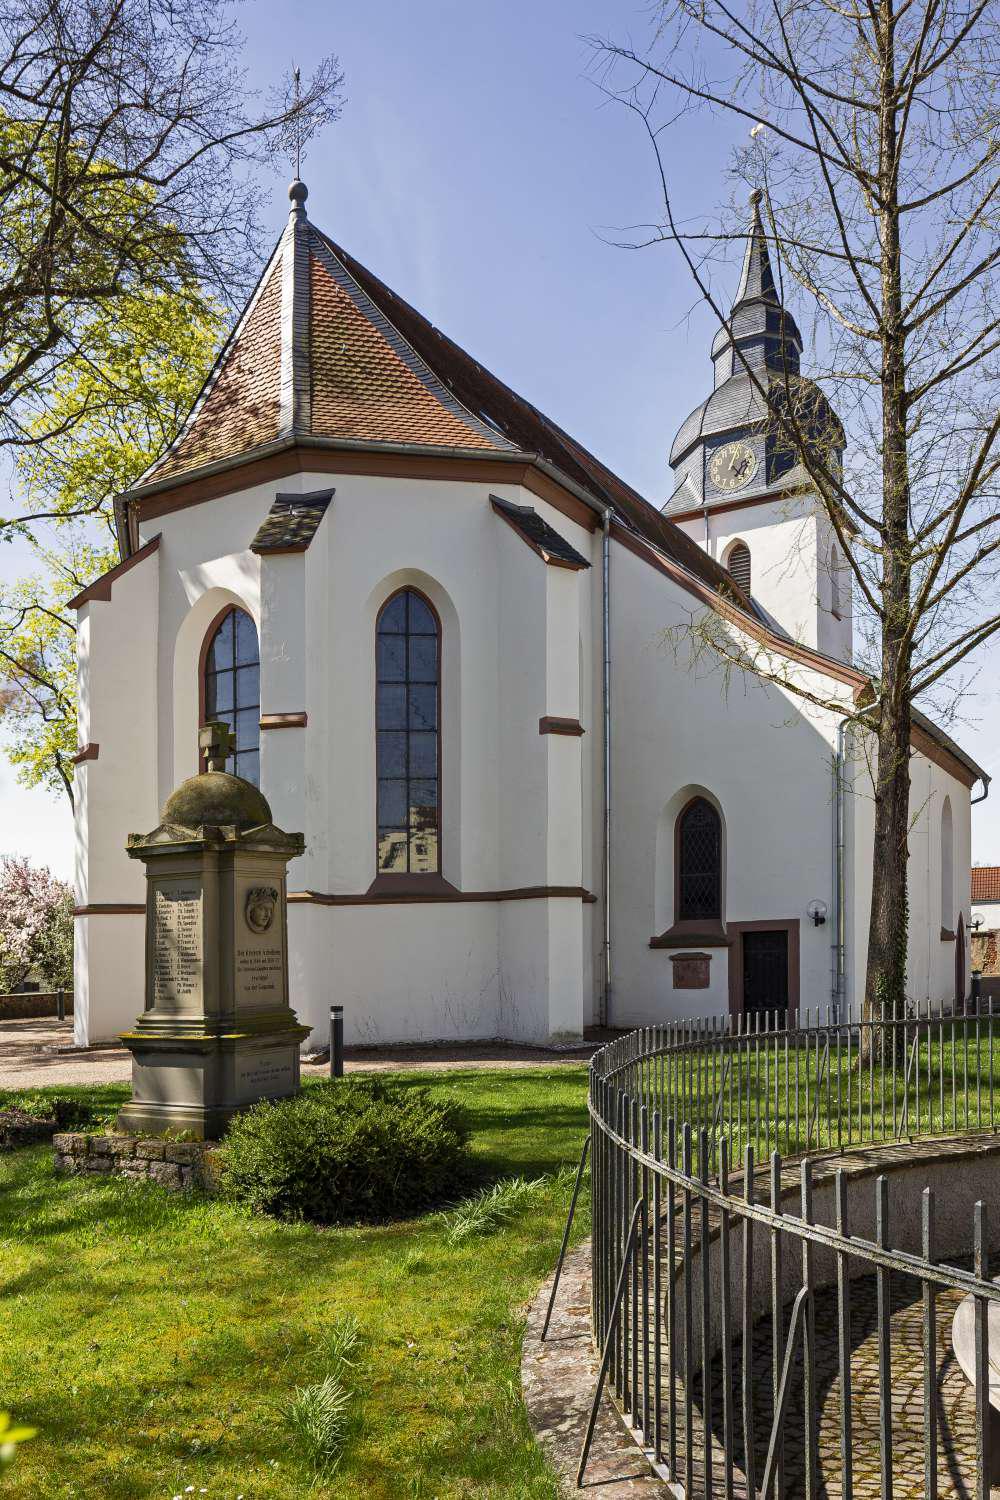 Bild 1 Evangelische Auferstehungskirche Darmstadt-Arheilgen - Evangelisch-lutherische Auferstehungsgemeinde Darmstadt-Arheilgen in Darmstadt